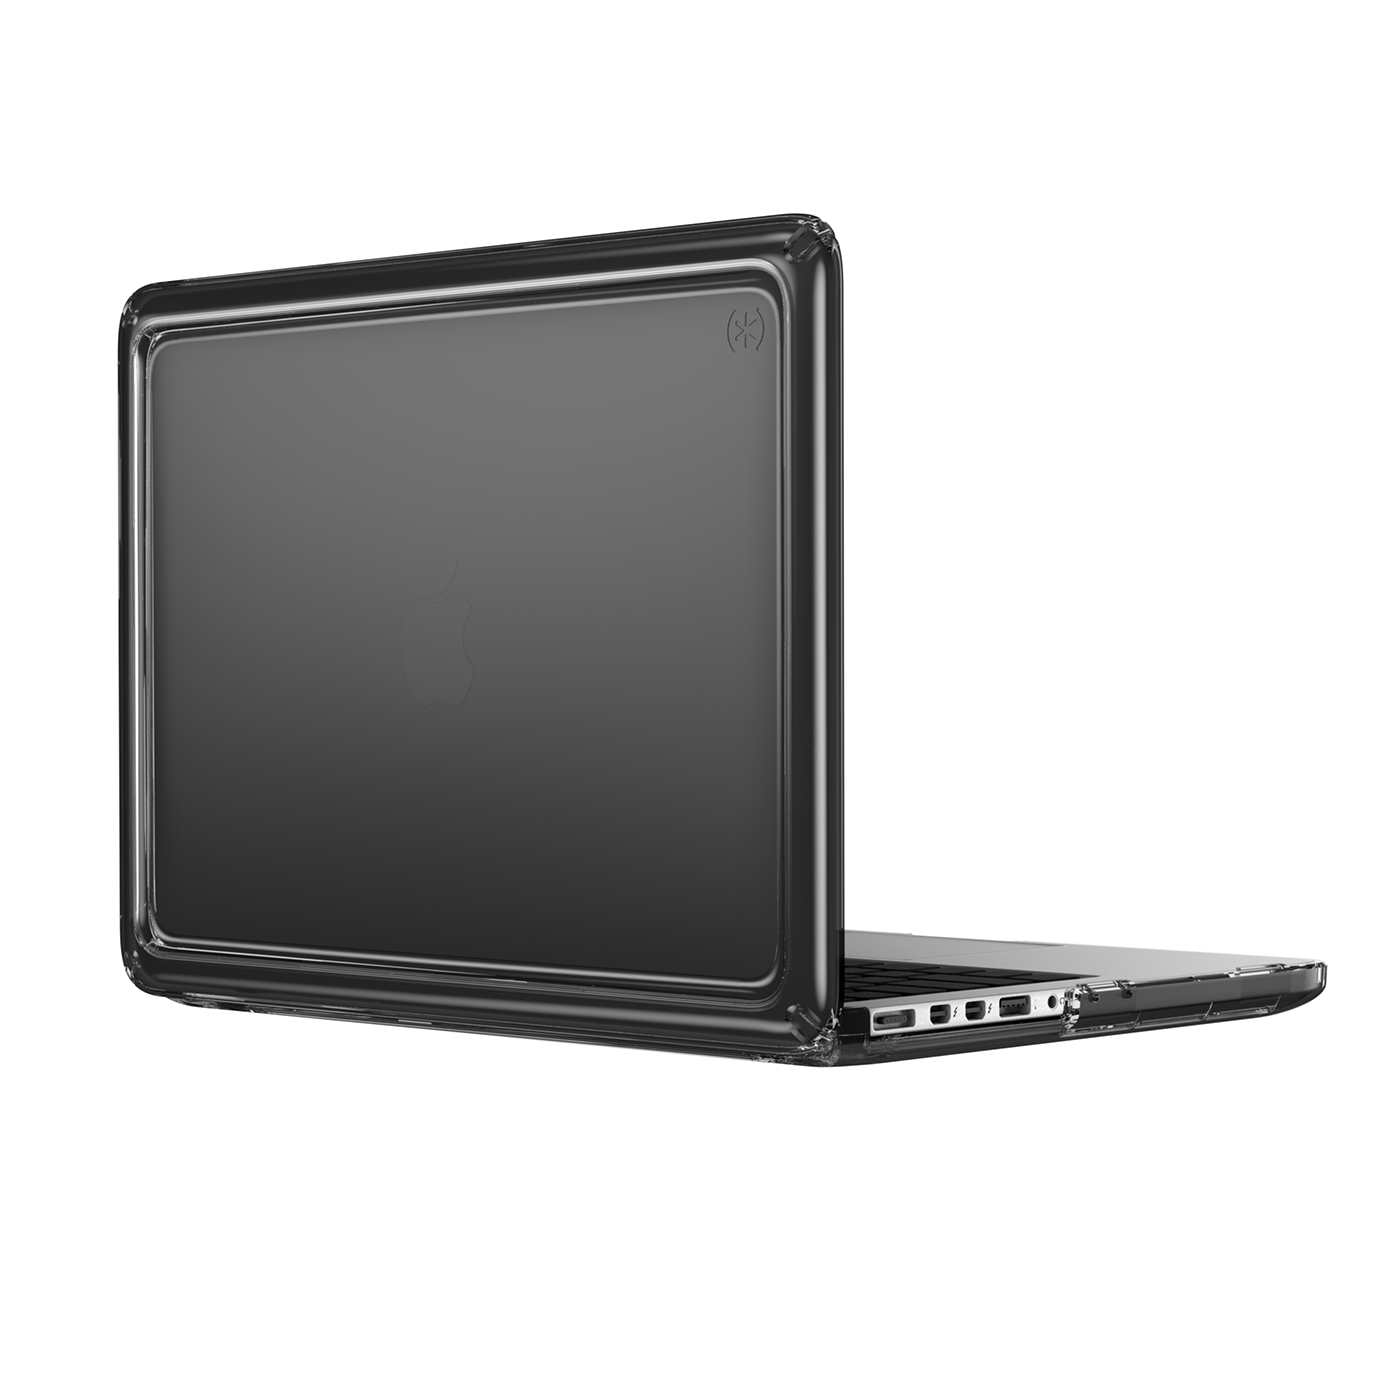 derek miller dmillercg macbook Laptop CGI Render product Advertising 